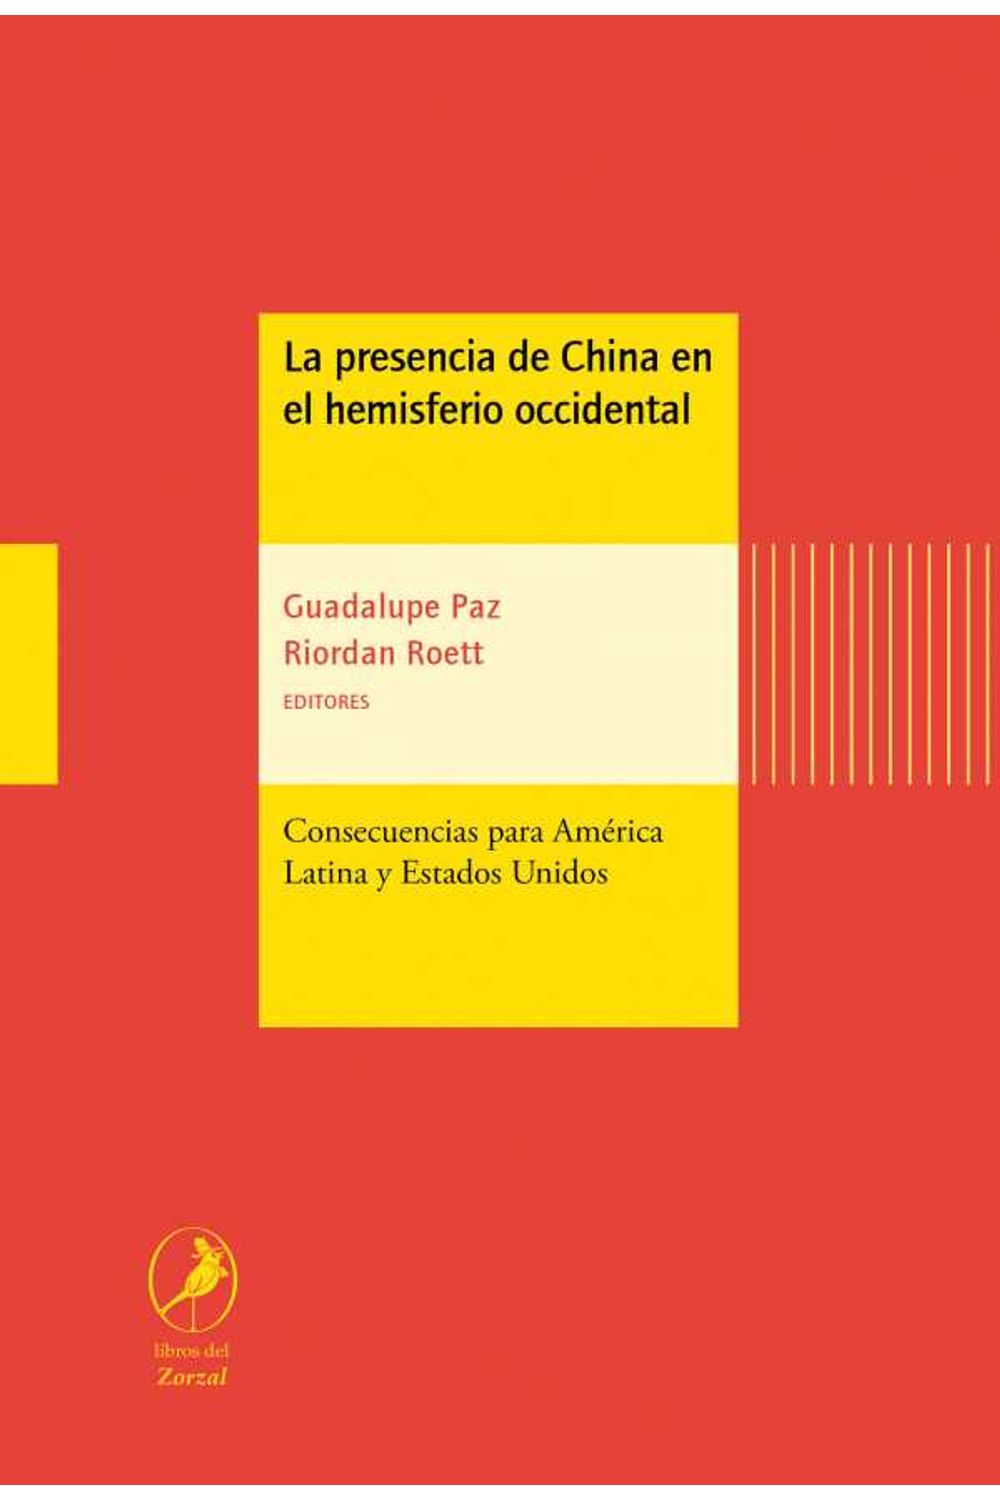 bw-la-presencia-de-china-en-el-hemisferio-occidental-libros-del-zorzal-9789875992924